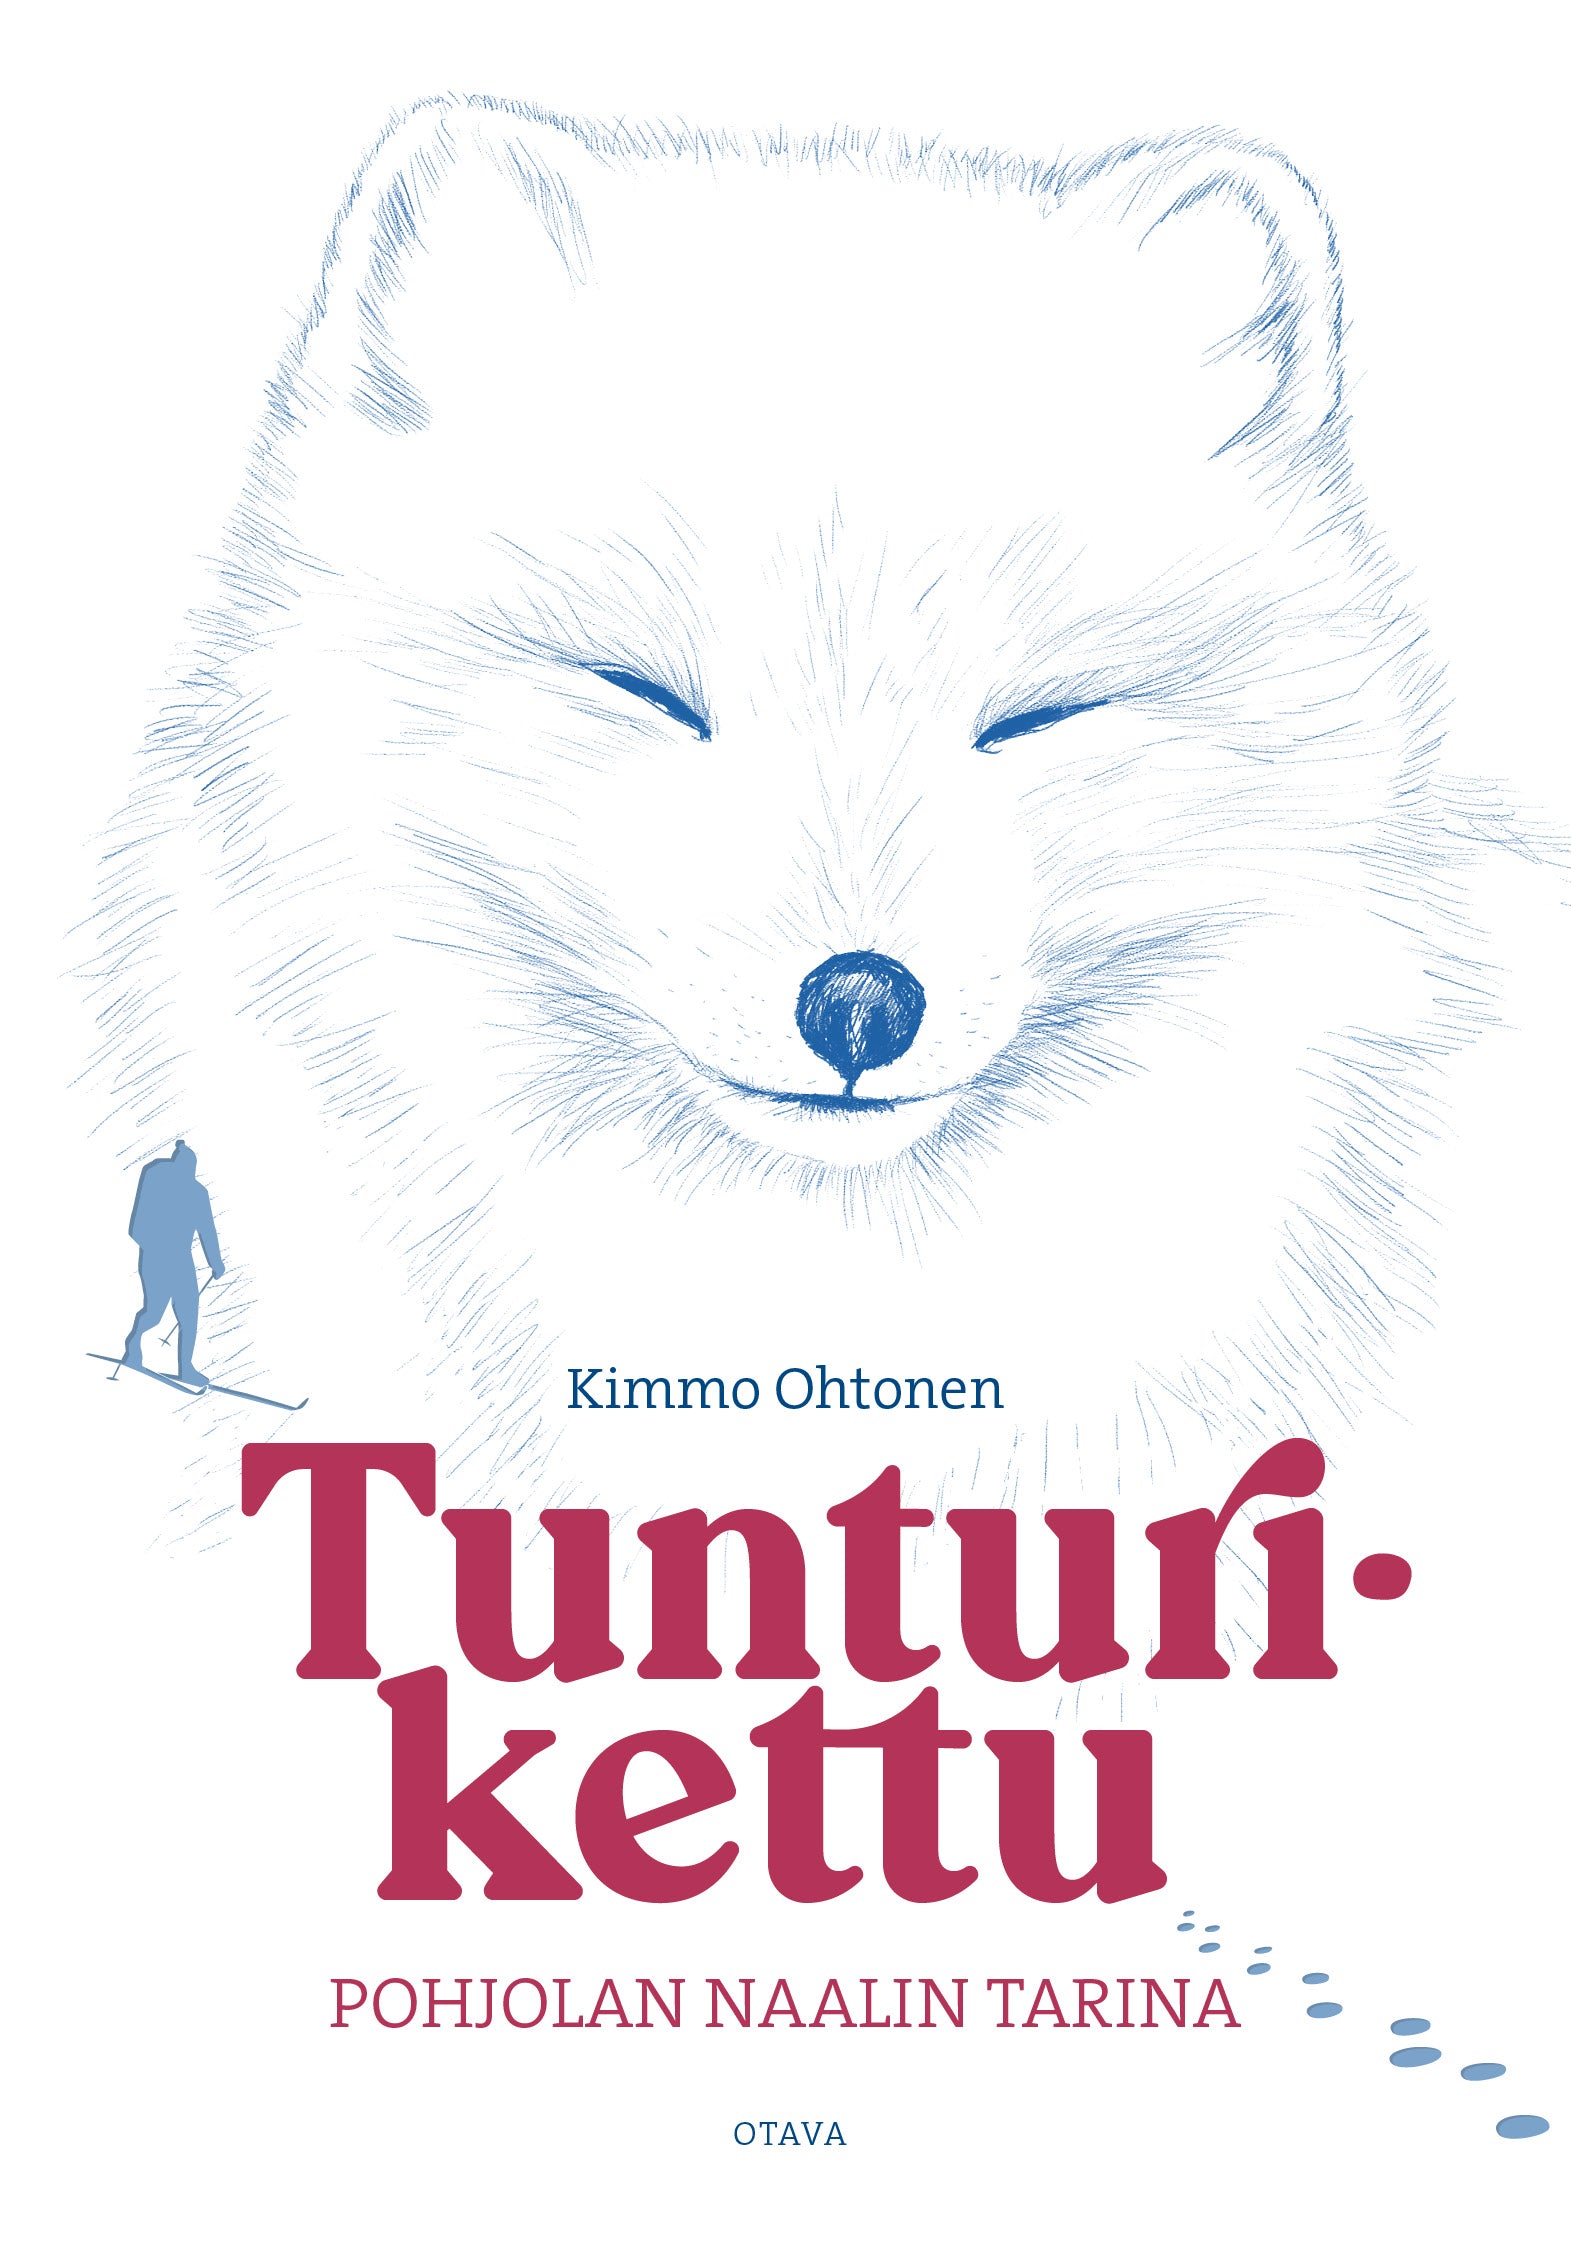 Tunturikettu - the story of Pohjolan Naali